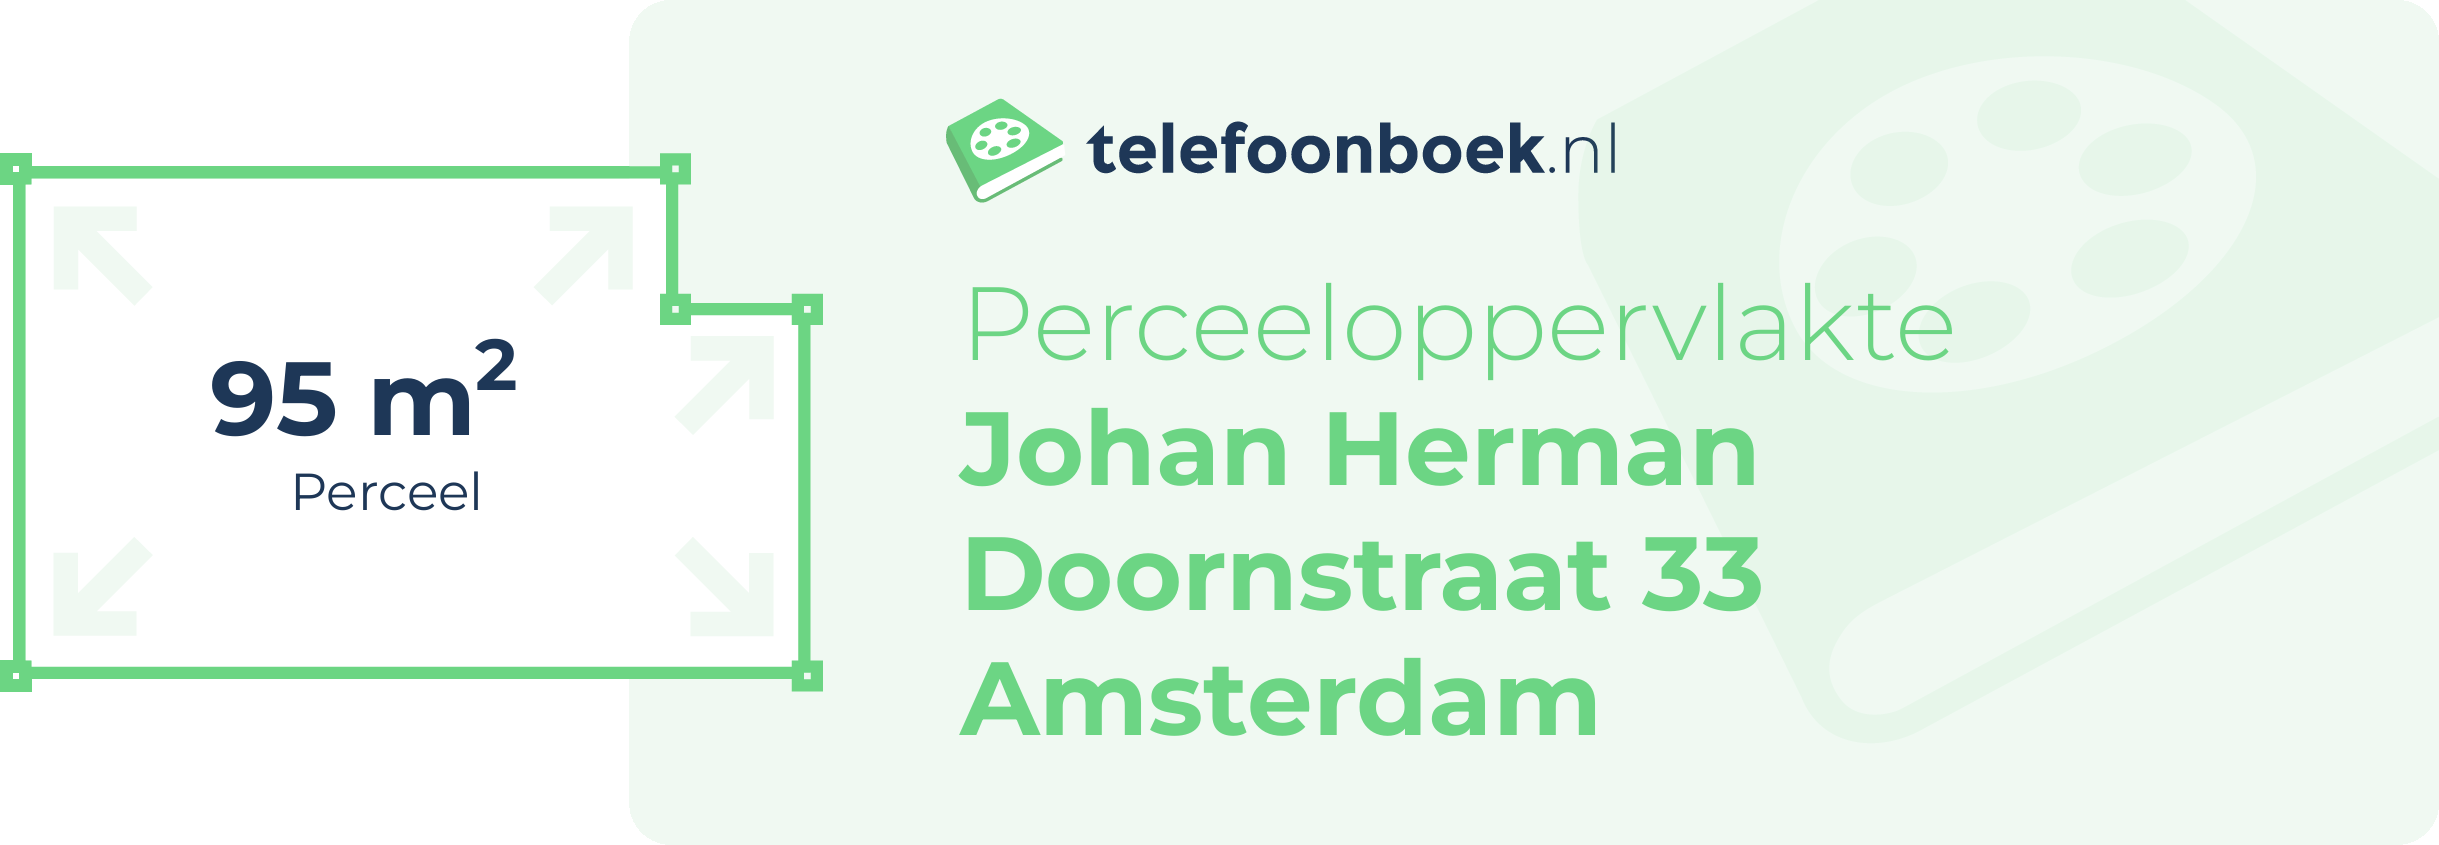 Perceeloppervlakte Johan Herman Doornstraat 33 Amsterdam